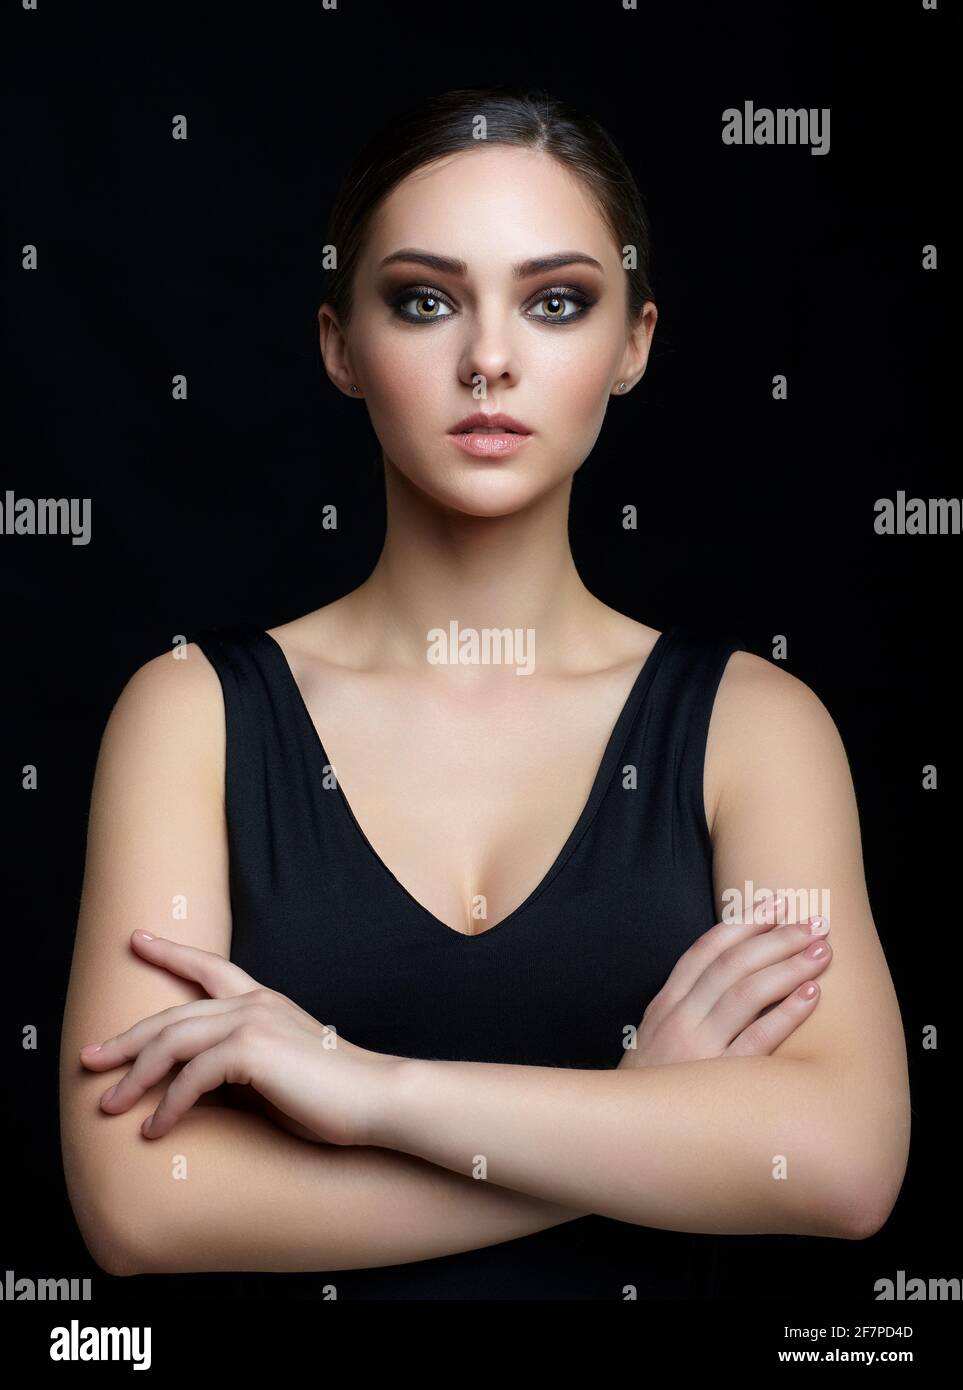 Occhi incrociati ragazza immagini e fotografie stock ad alta risoluzione -  Alamy